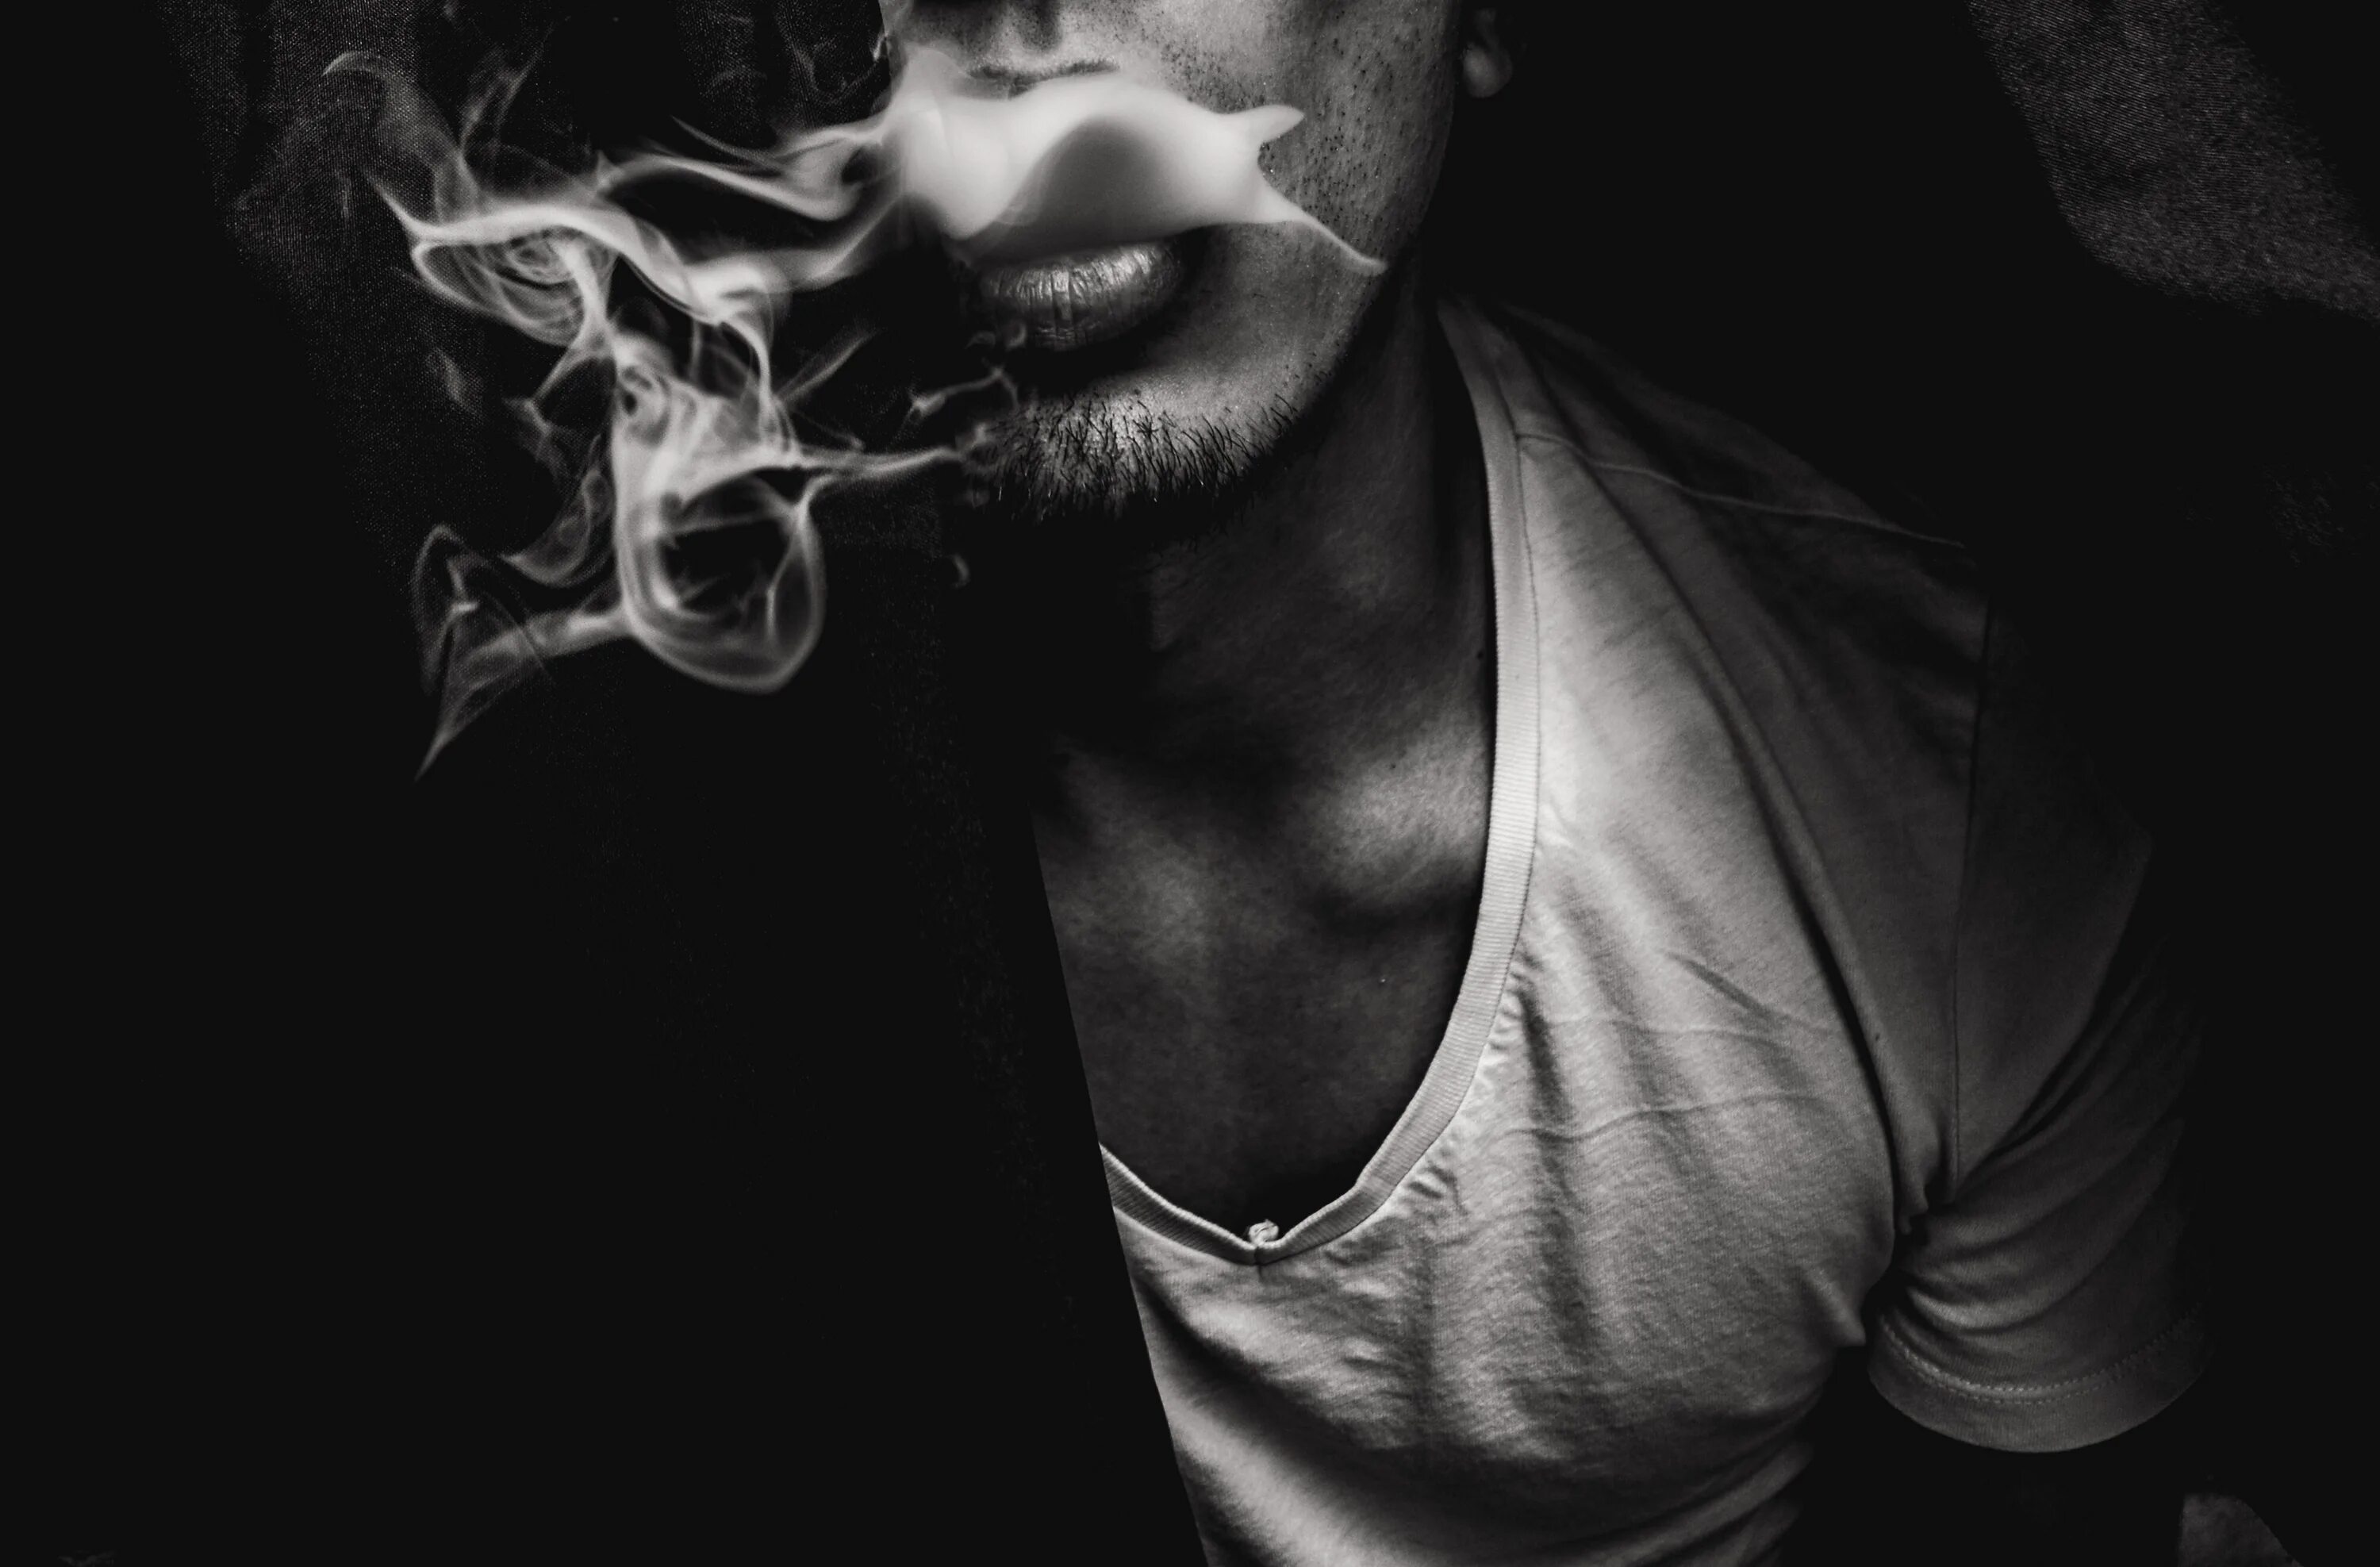 Сигаретный дым дорогой коньяк песня. Картинки на аву для парней. Дерзкий парень. Мужчина в дыму. Лицо в дыму.